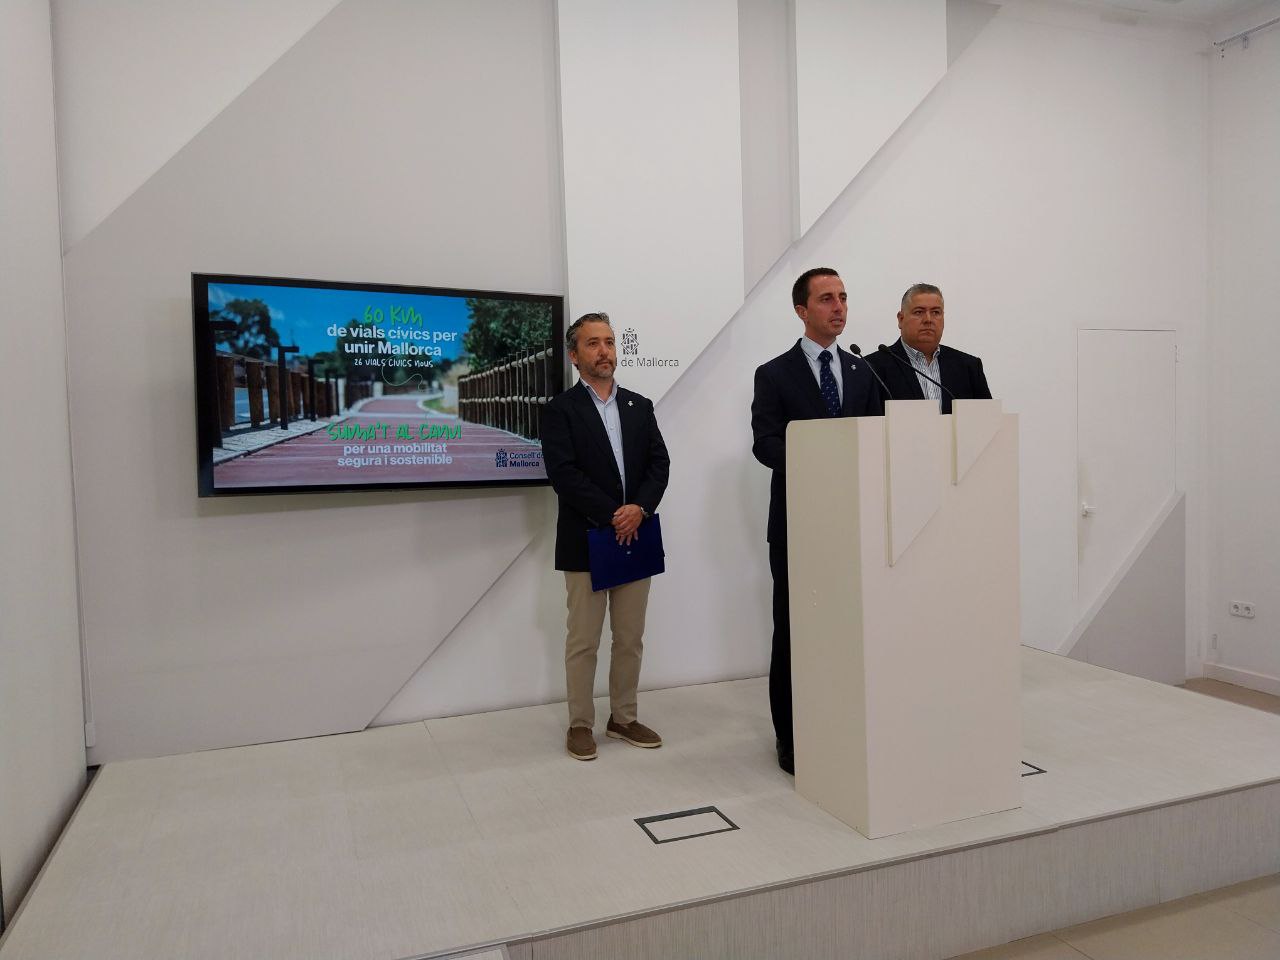 El president Galmés presenta el pla per construir 26 vials cívics a Mallorca.